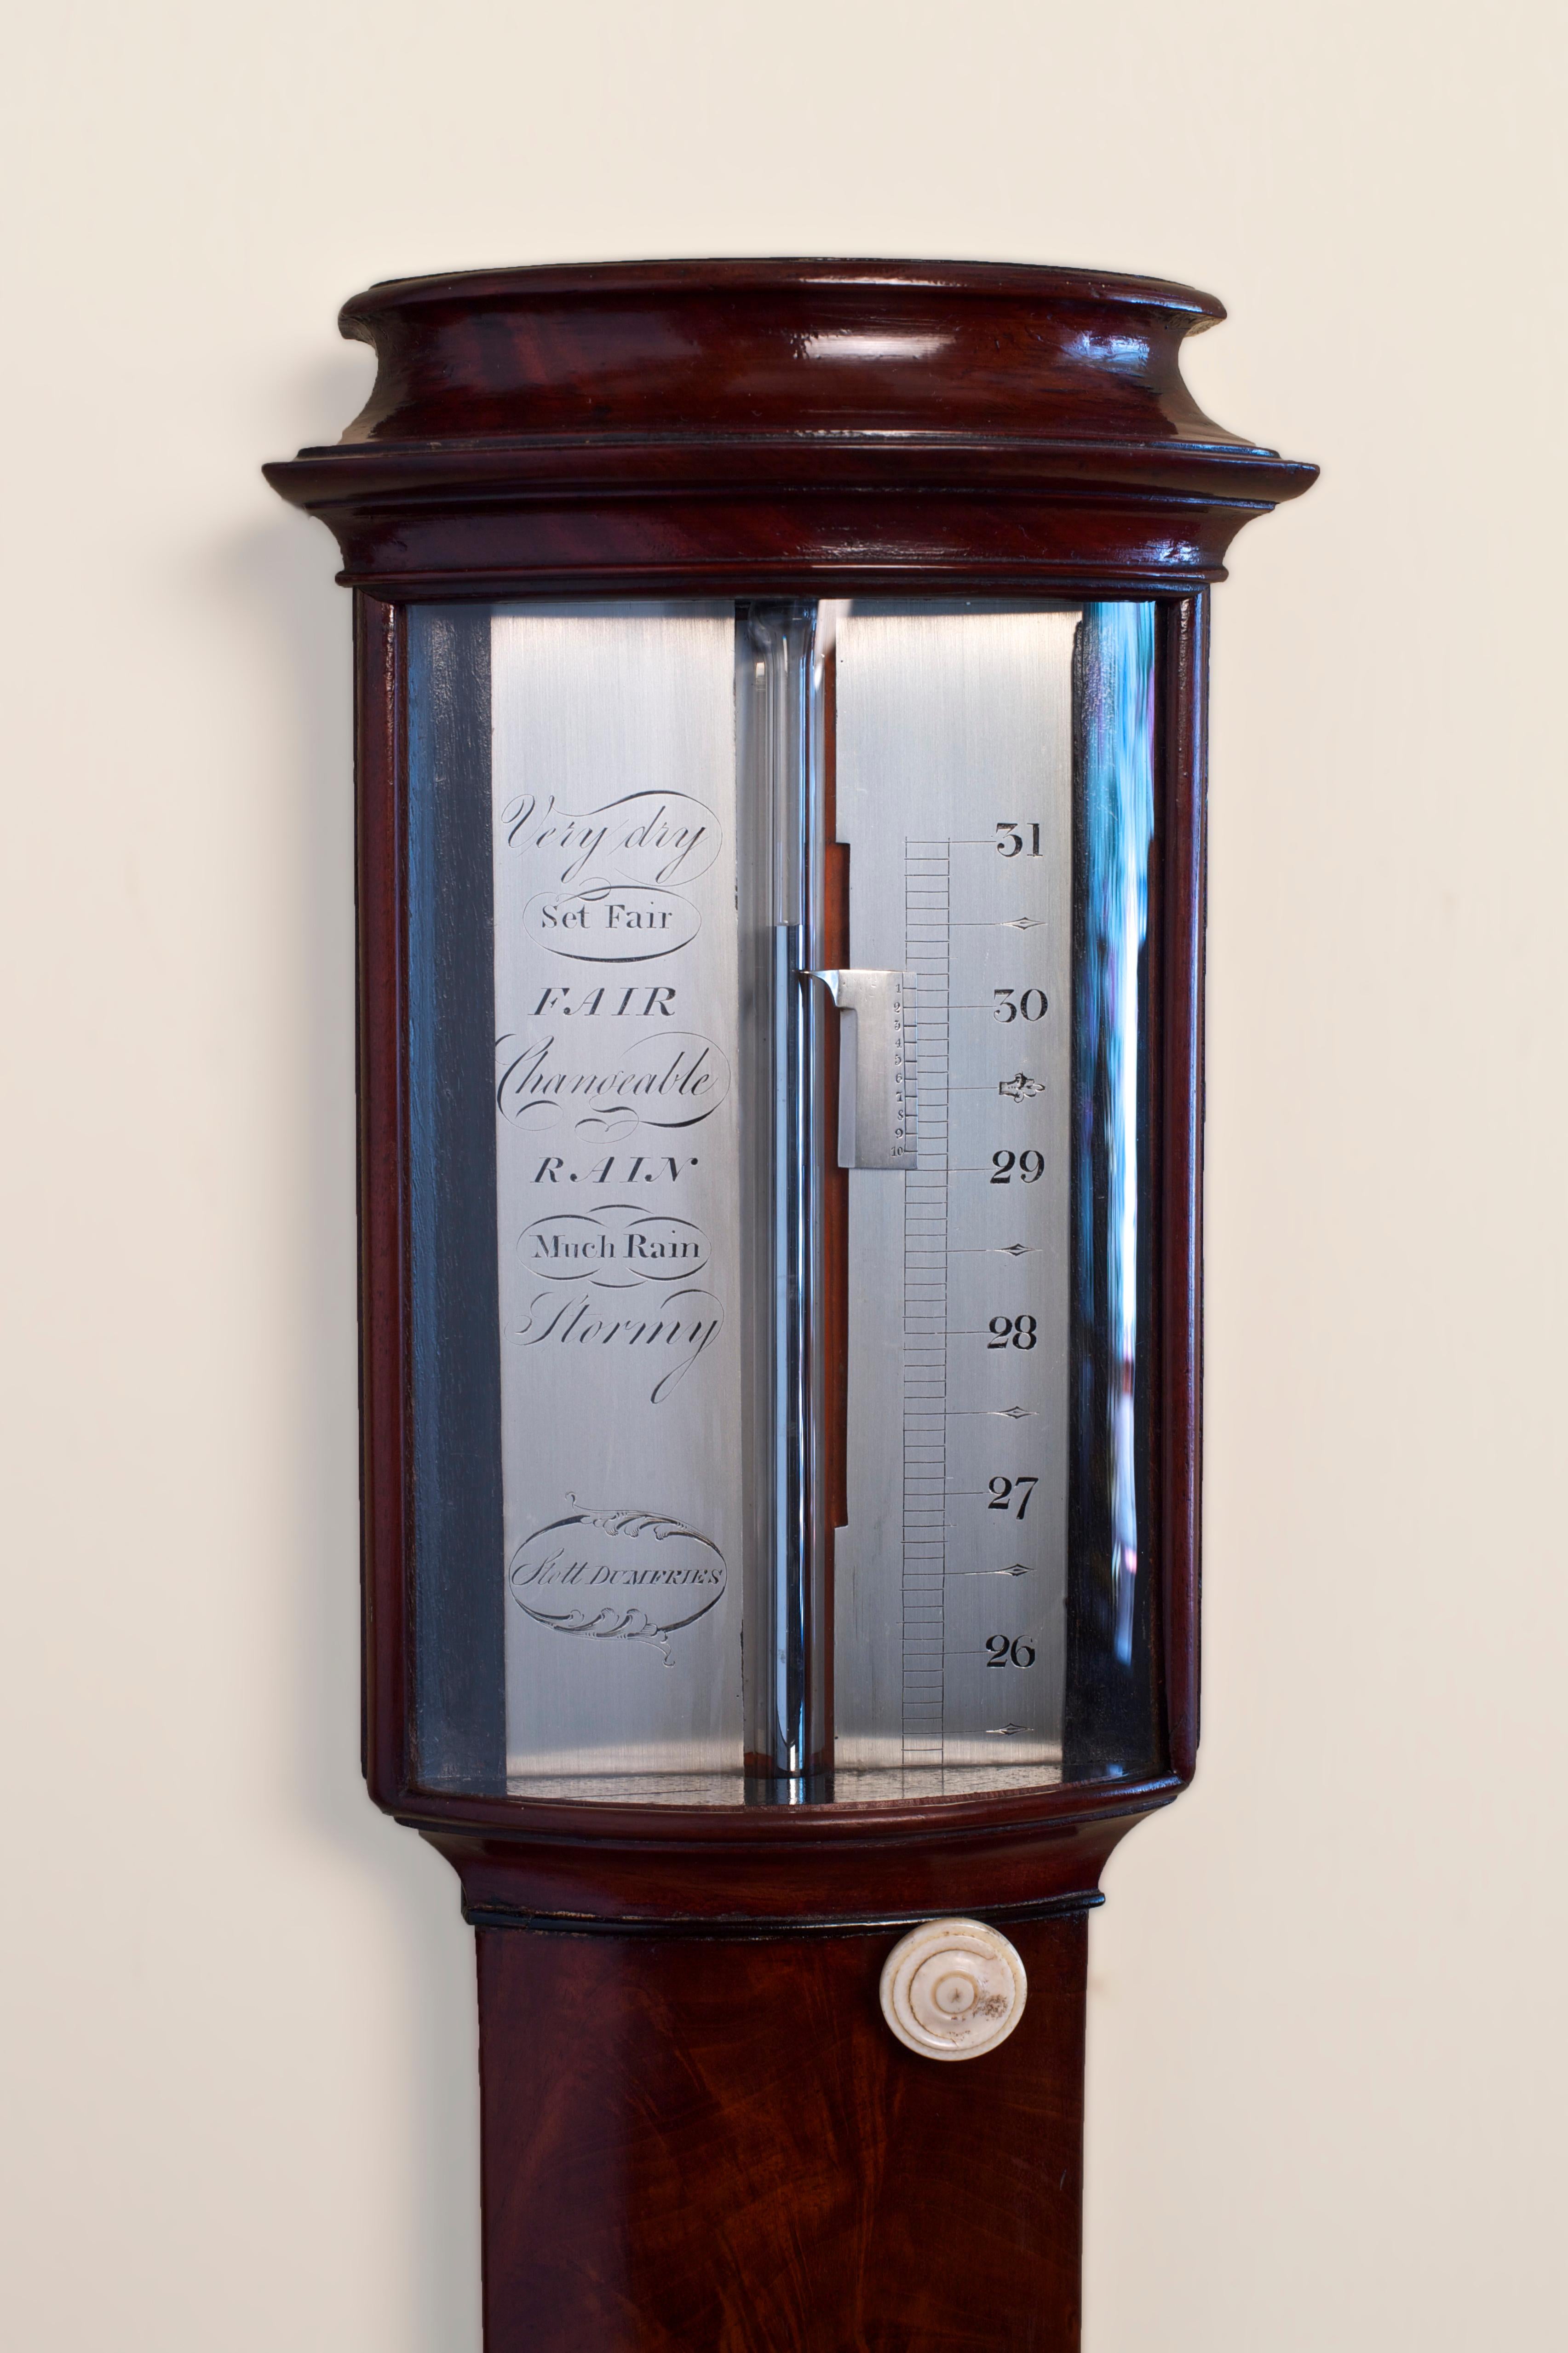 Feines georgianisches Mahagoni-Stabbarometer mit Bogenfront. Vor der versilberten Registerplatte mit verschiebbarem Nonius, der durch einen aus Elfenbein gedrehten Knopf gesteuert wird, befindet sich ein Glas mit Bogenfront. Tragbare Zisterne aus